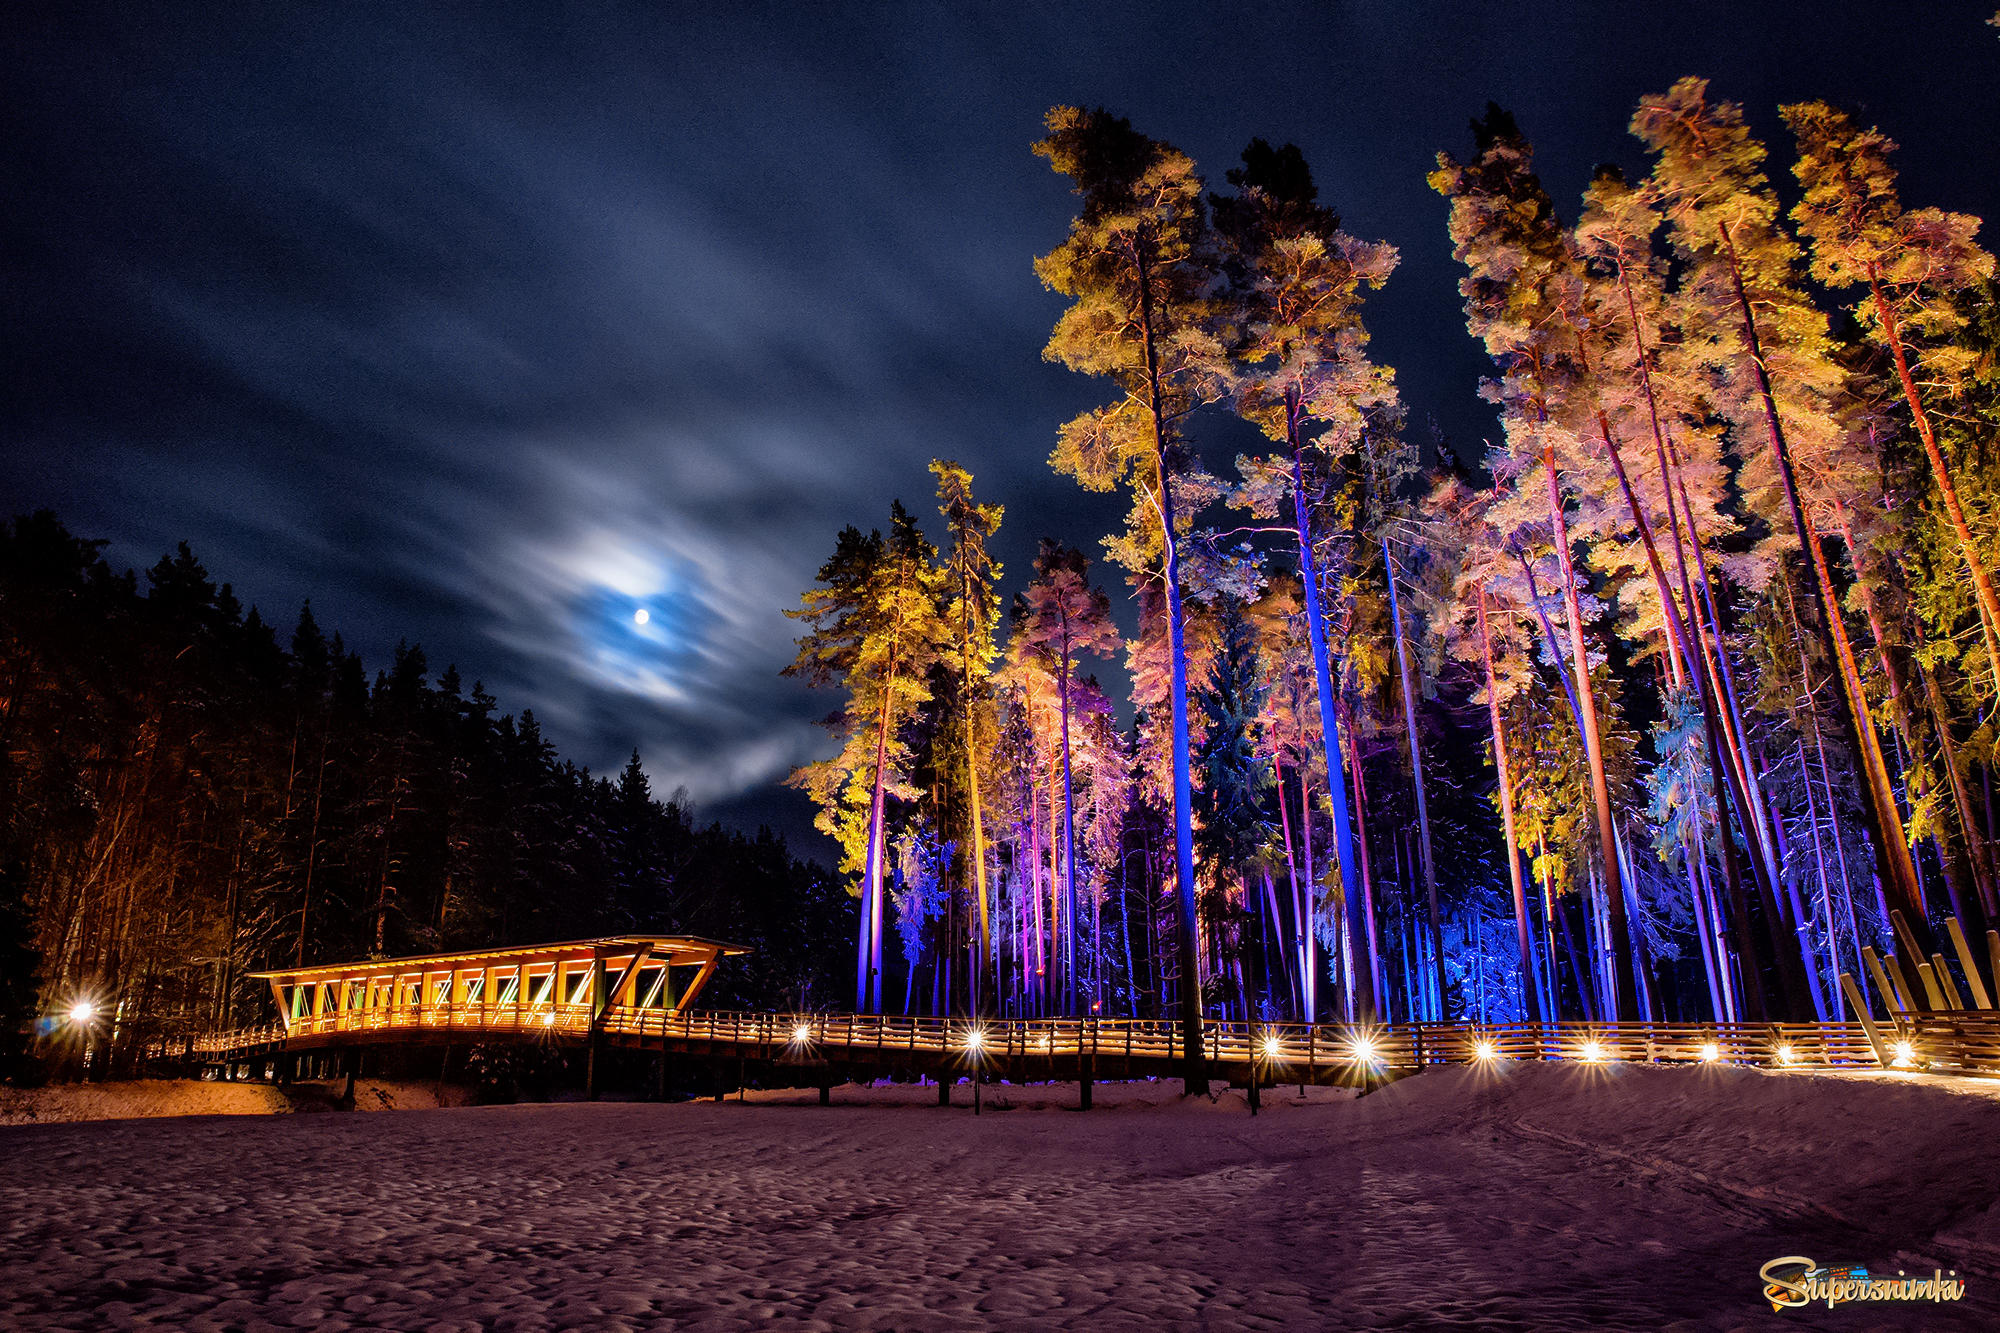 Облачная луна в зимнем лесу над снежным мостом.